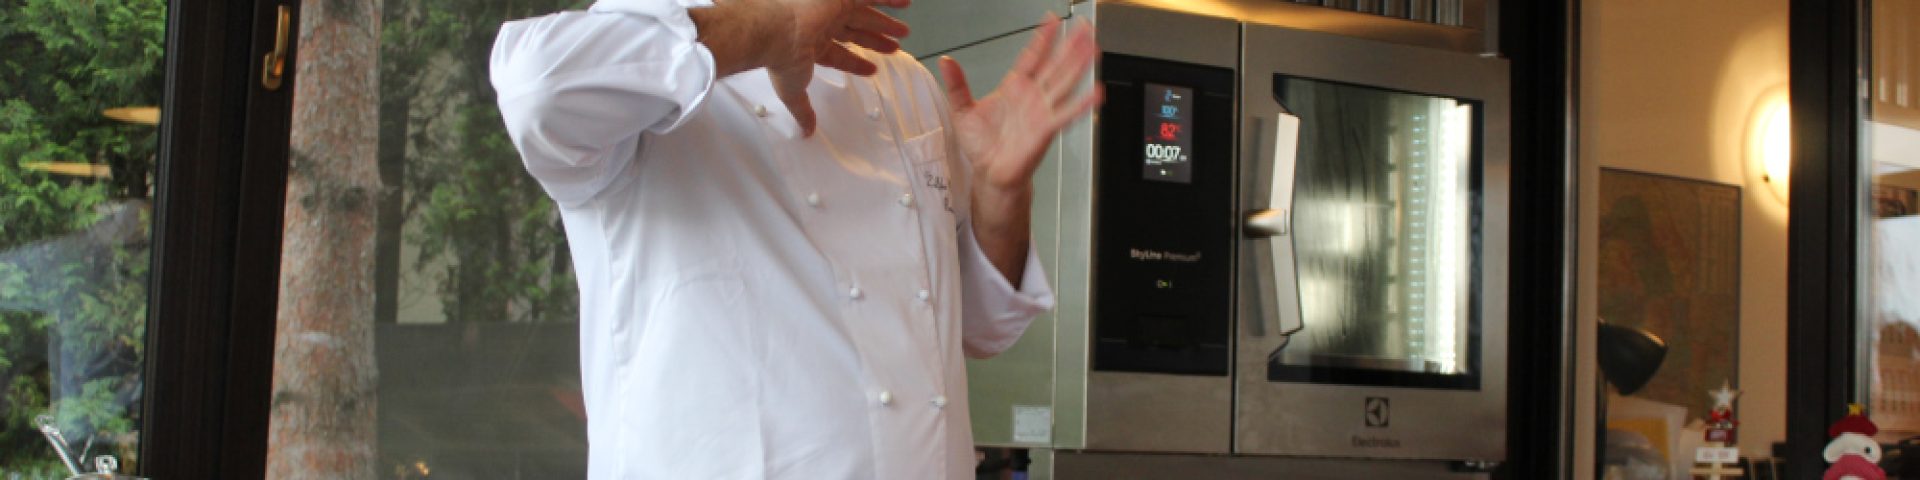 Tehnologie în bucătărie | Trainingul SkyLine cu Chef Bremen